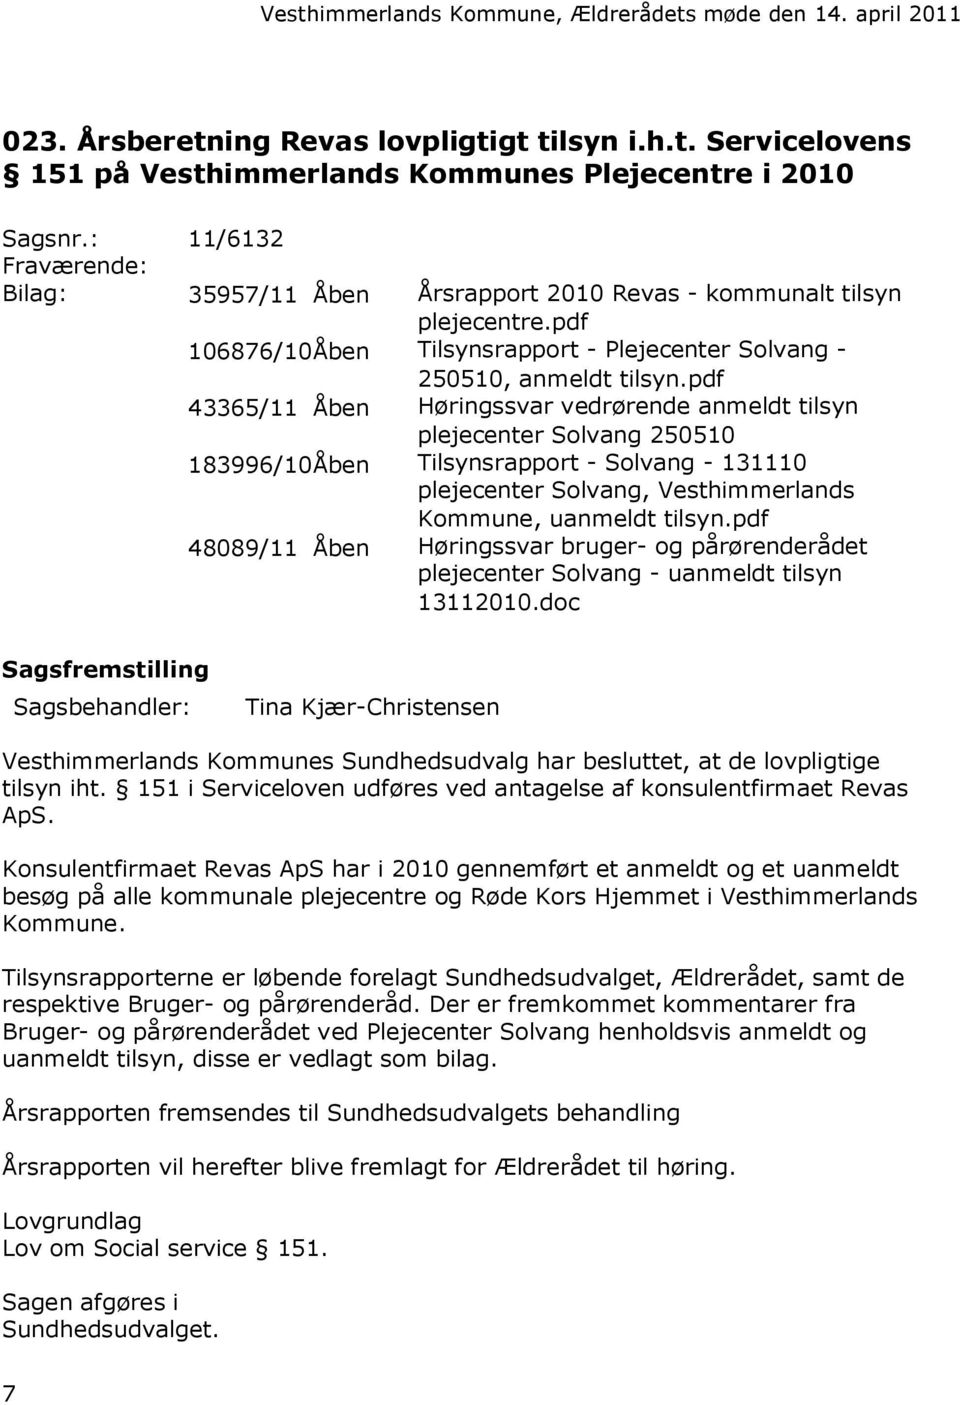 pdf 43365/11 Åben Høringssvar vedrørende anmeldt tilsyn plejecenter Solvang 250510 183996/10Åben Tilsynsrapport - Solvang - 131110 plejecenter Solvang, Vesthimmerlands Kommune, uanmeldt tilsyn.